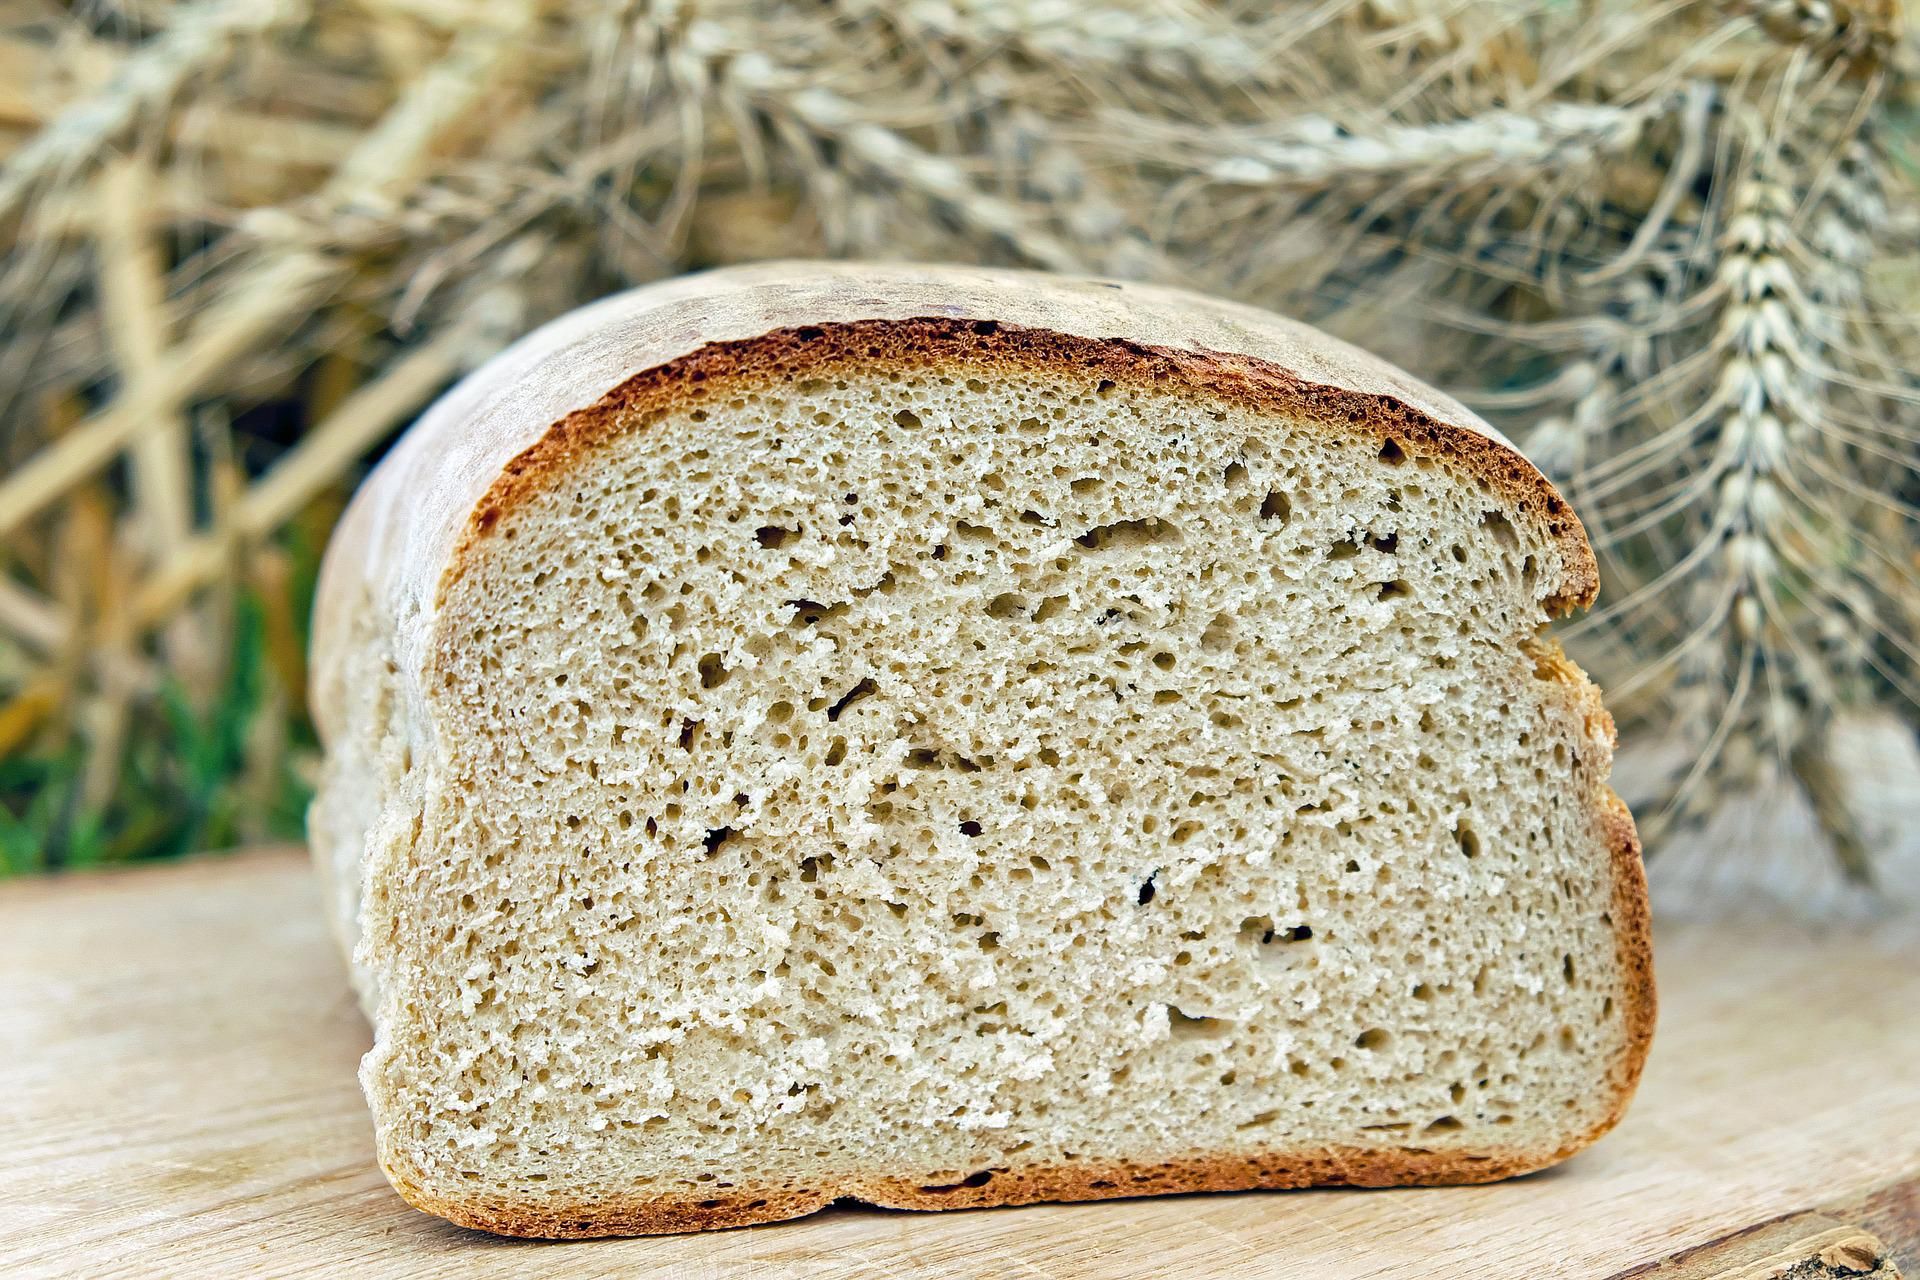 TRUCOS ADELGAZAR RÁPIDO: El pan de mercadona sin calorías ni grasa  compatible con cualquier dieta